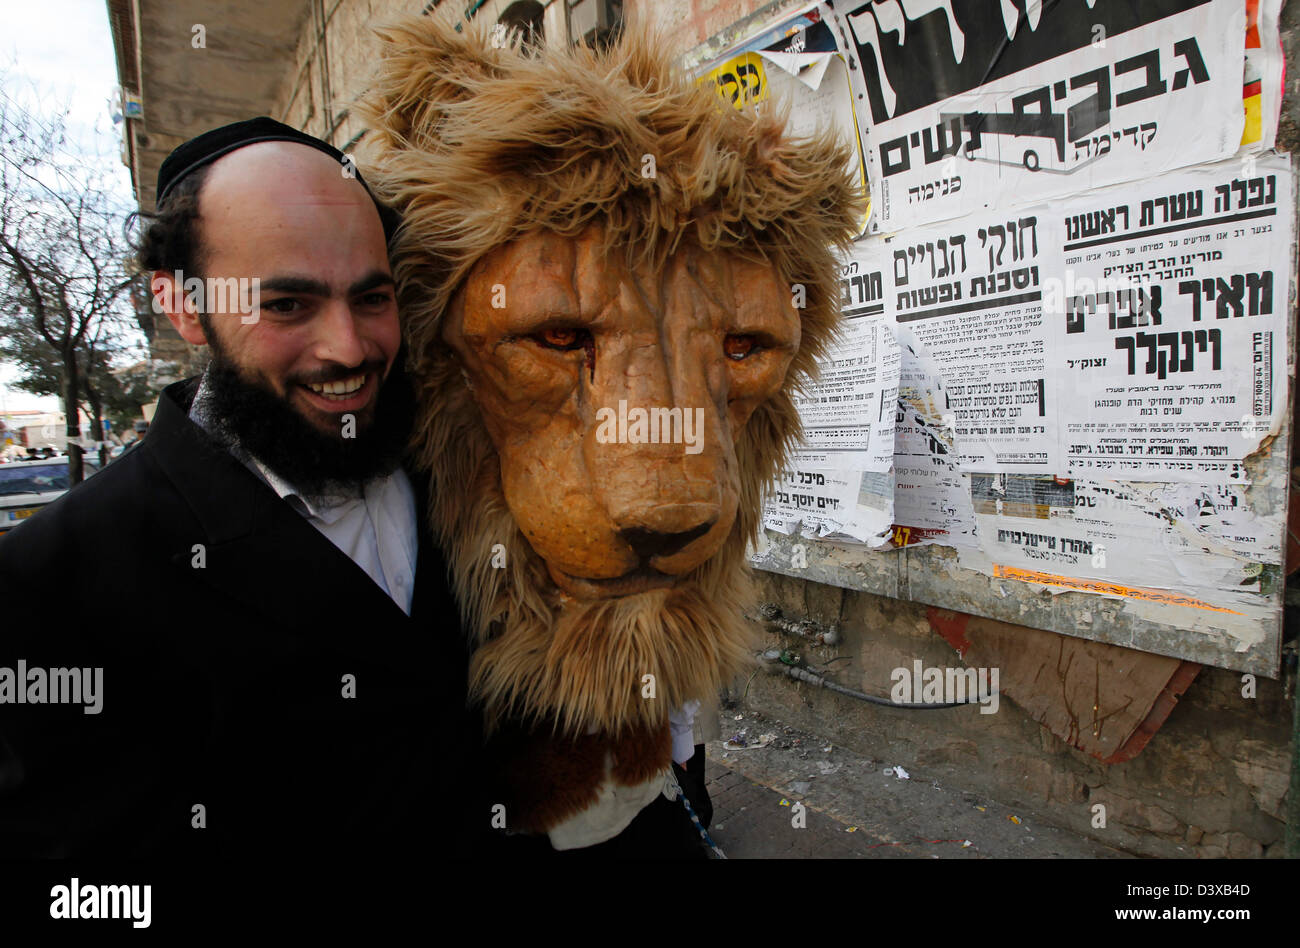 Haredi ebreo che indossa il costume durante la vacanza ebraica di Purim nel quartiere di Mea Shearim, un'enclave ultra-ortodossa in Israele a Gerusalemme ovest Foto Stock